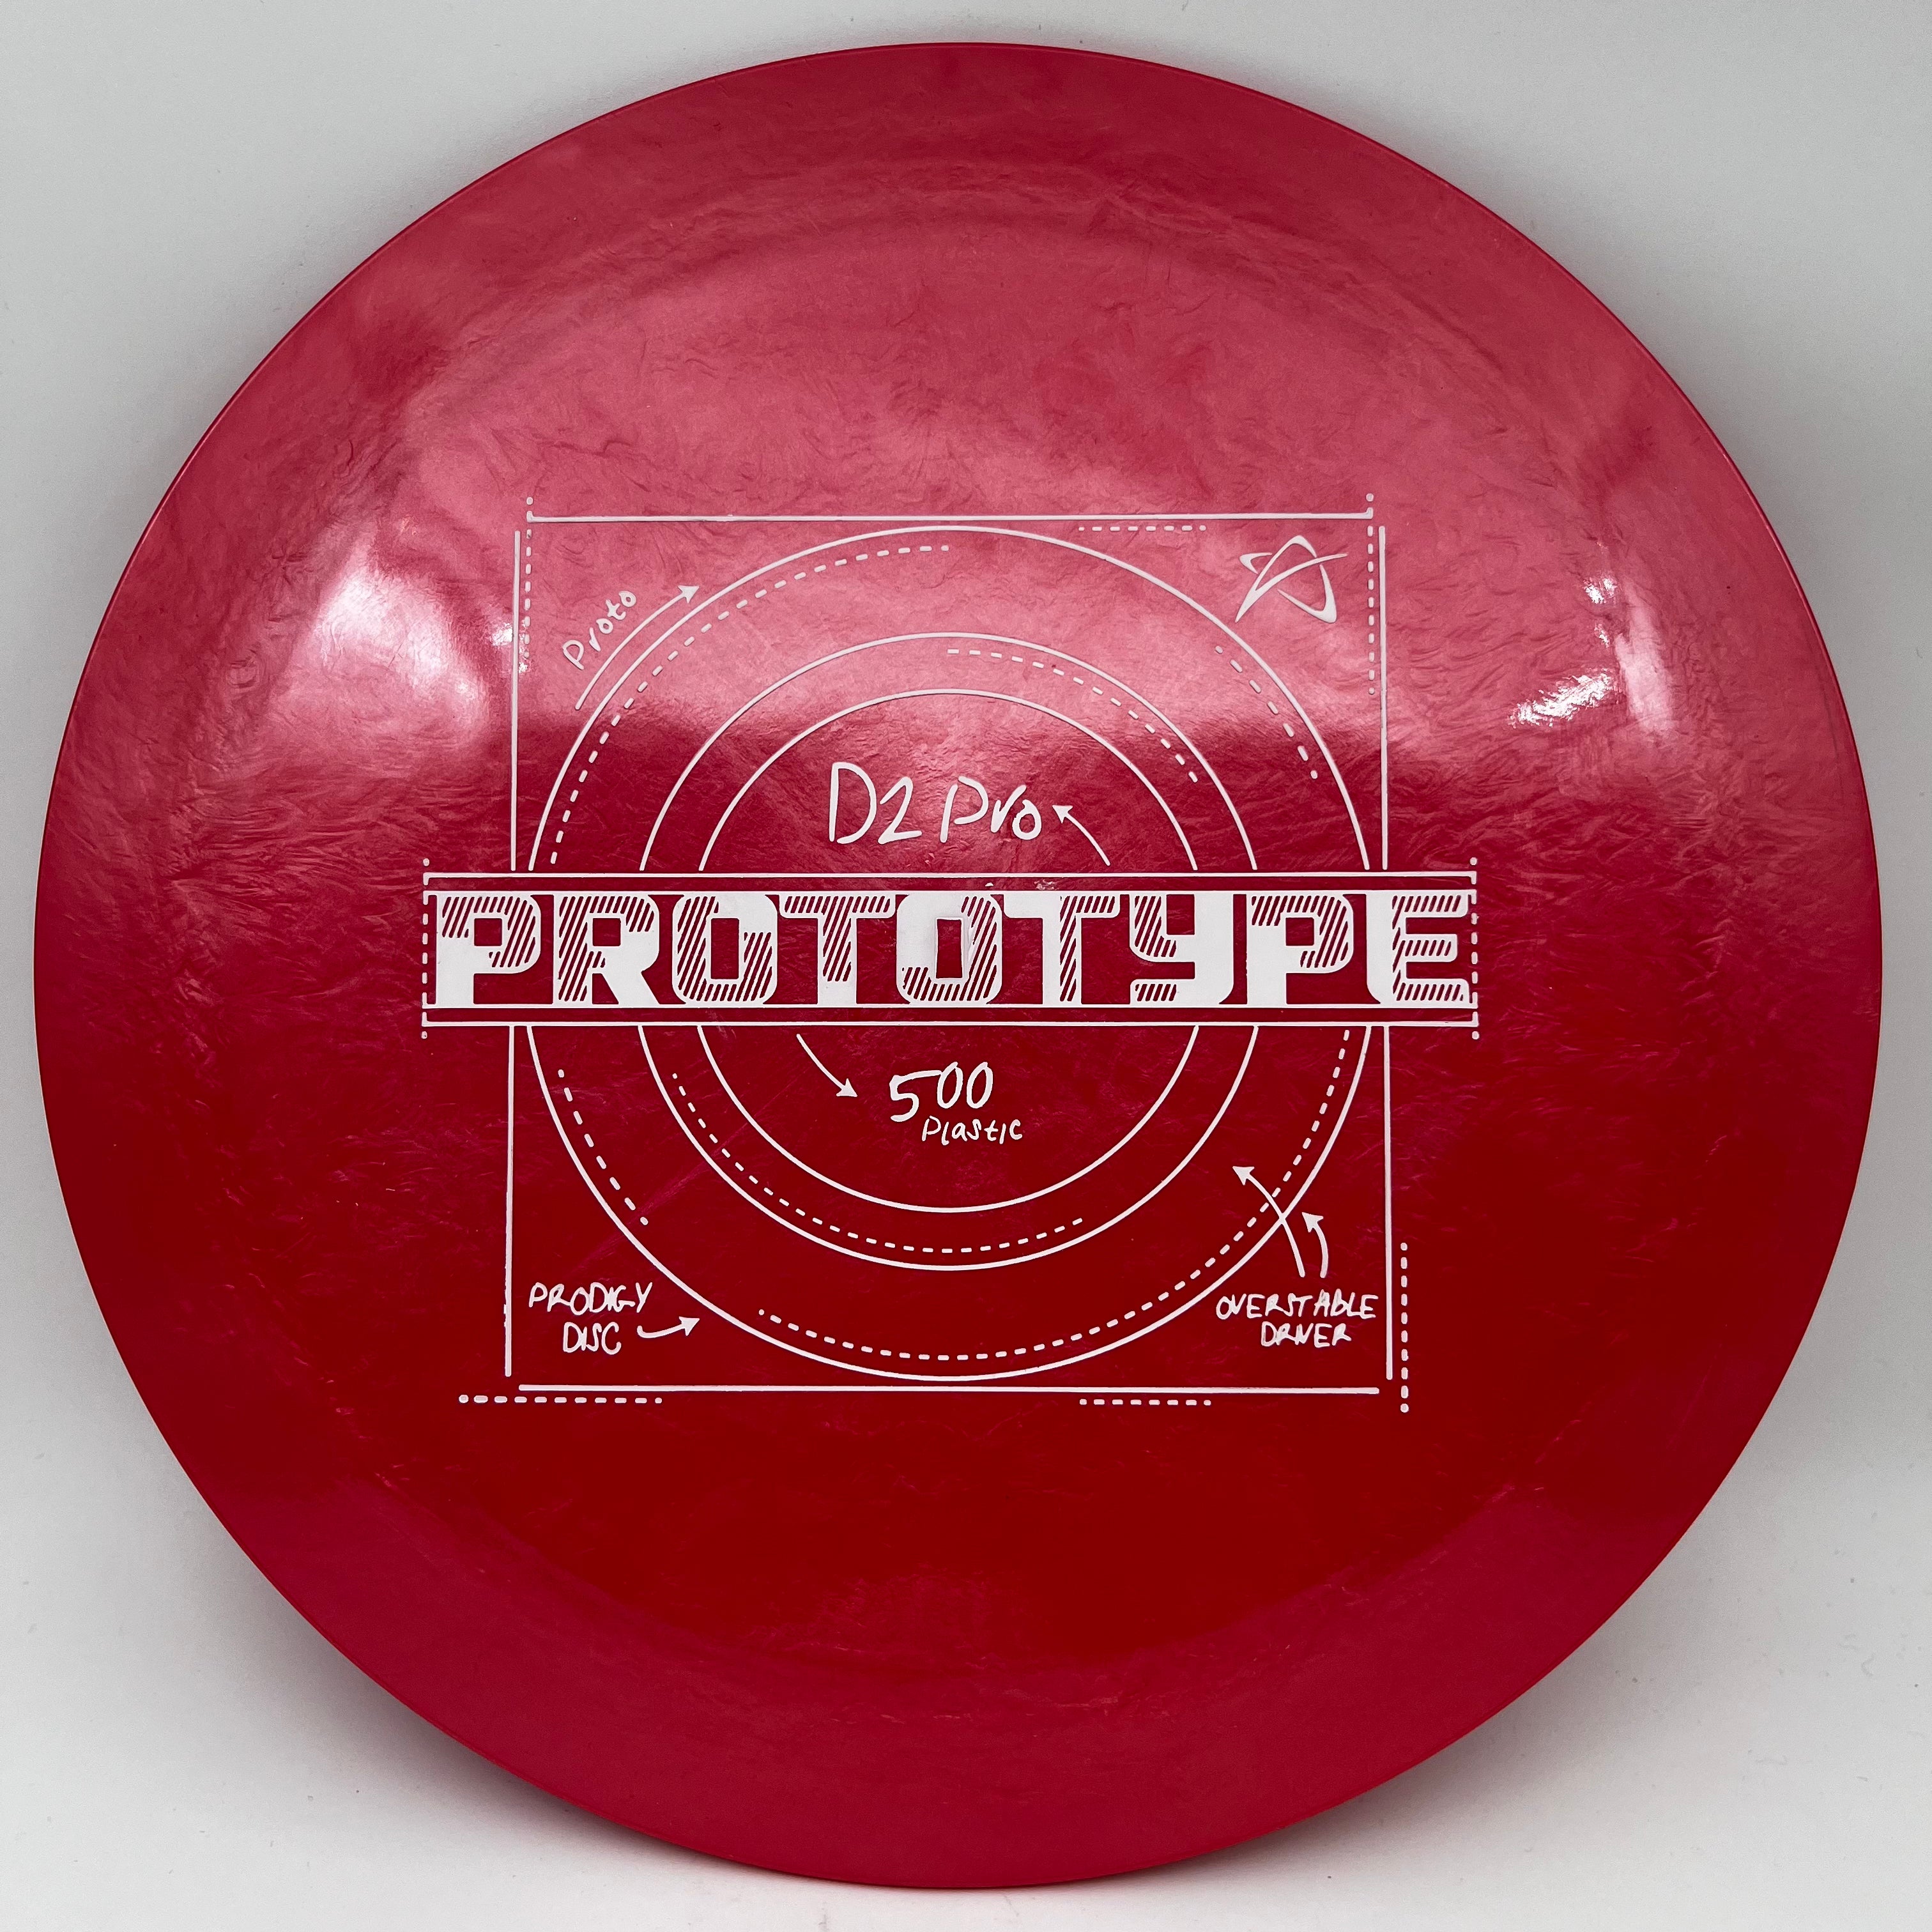 500 Plastic D2 PRO - Prototype